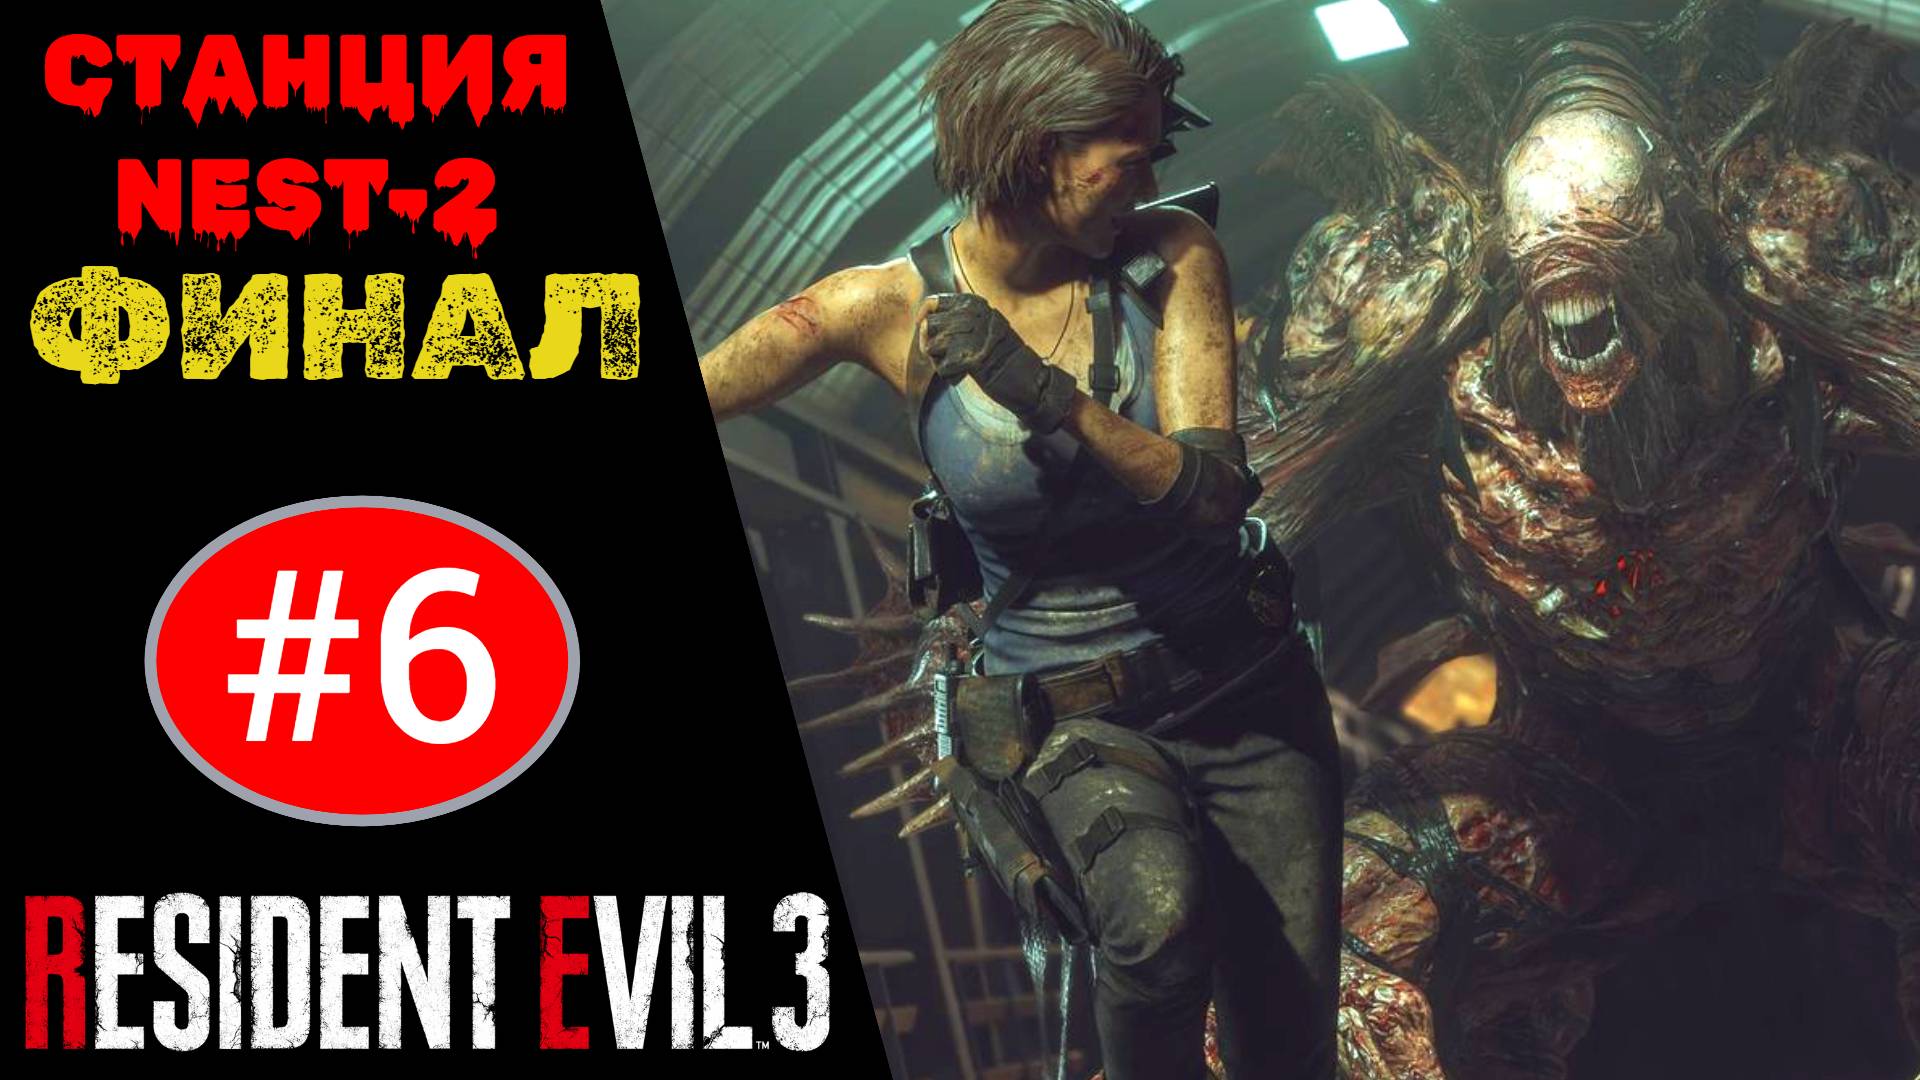 ? Прохождение Resident Evil 3 Remake ФИНАЛ #6 Станция NEST-2, финальный босс Немезис (РУС. ОЗВУЧКА)